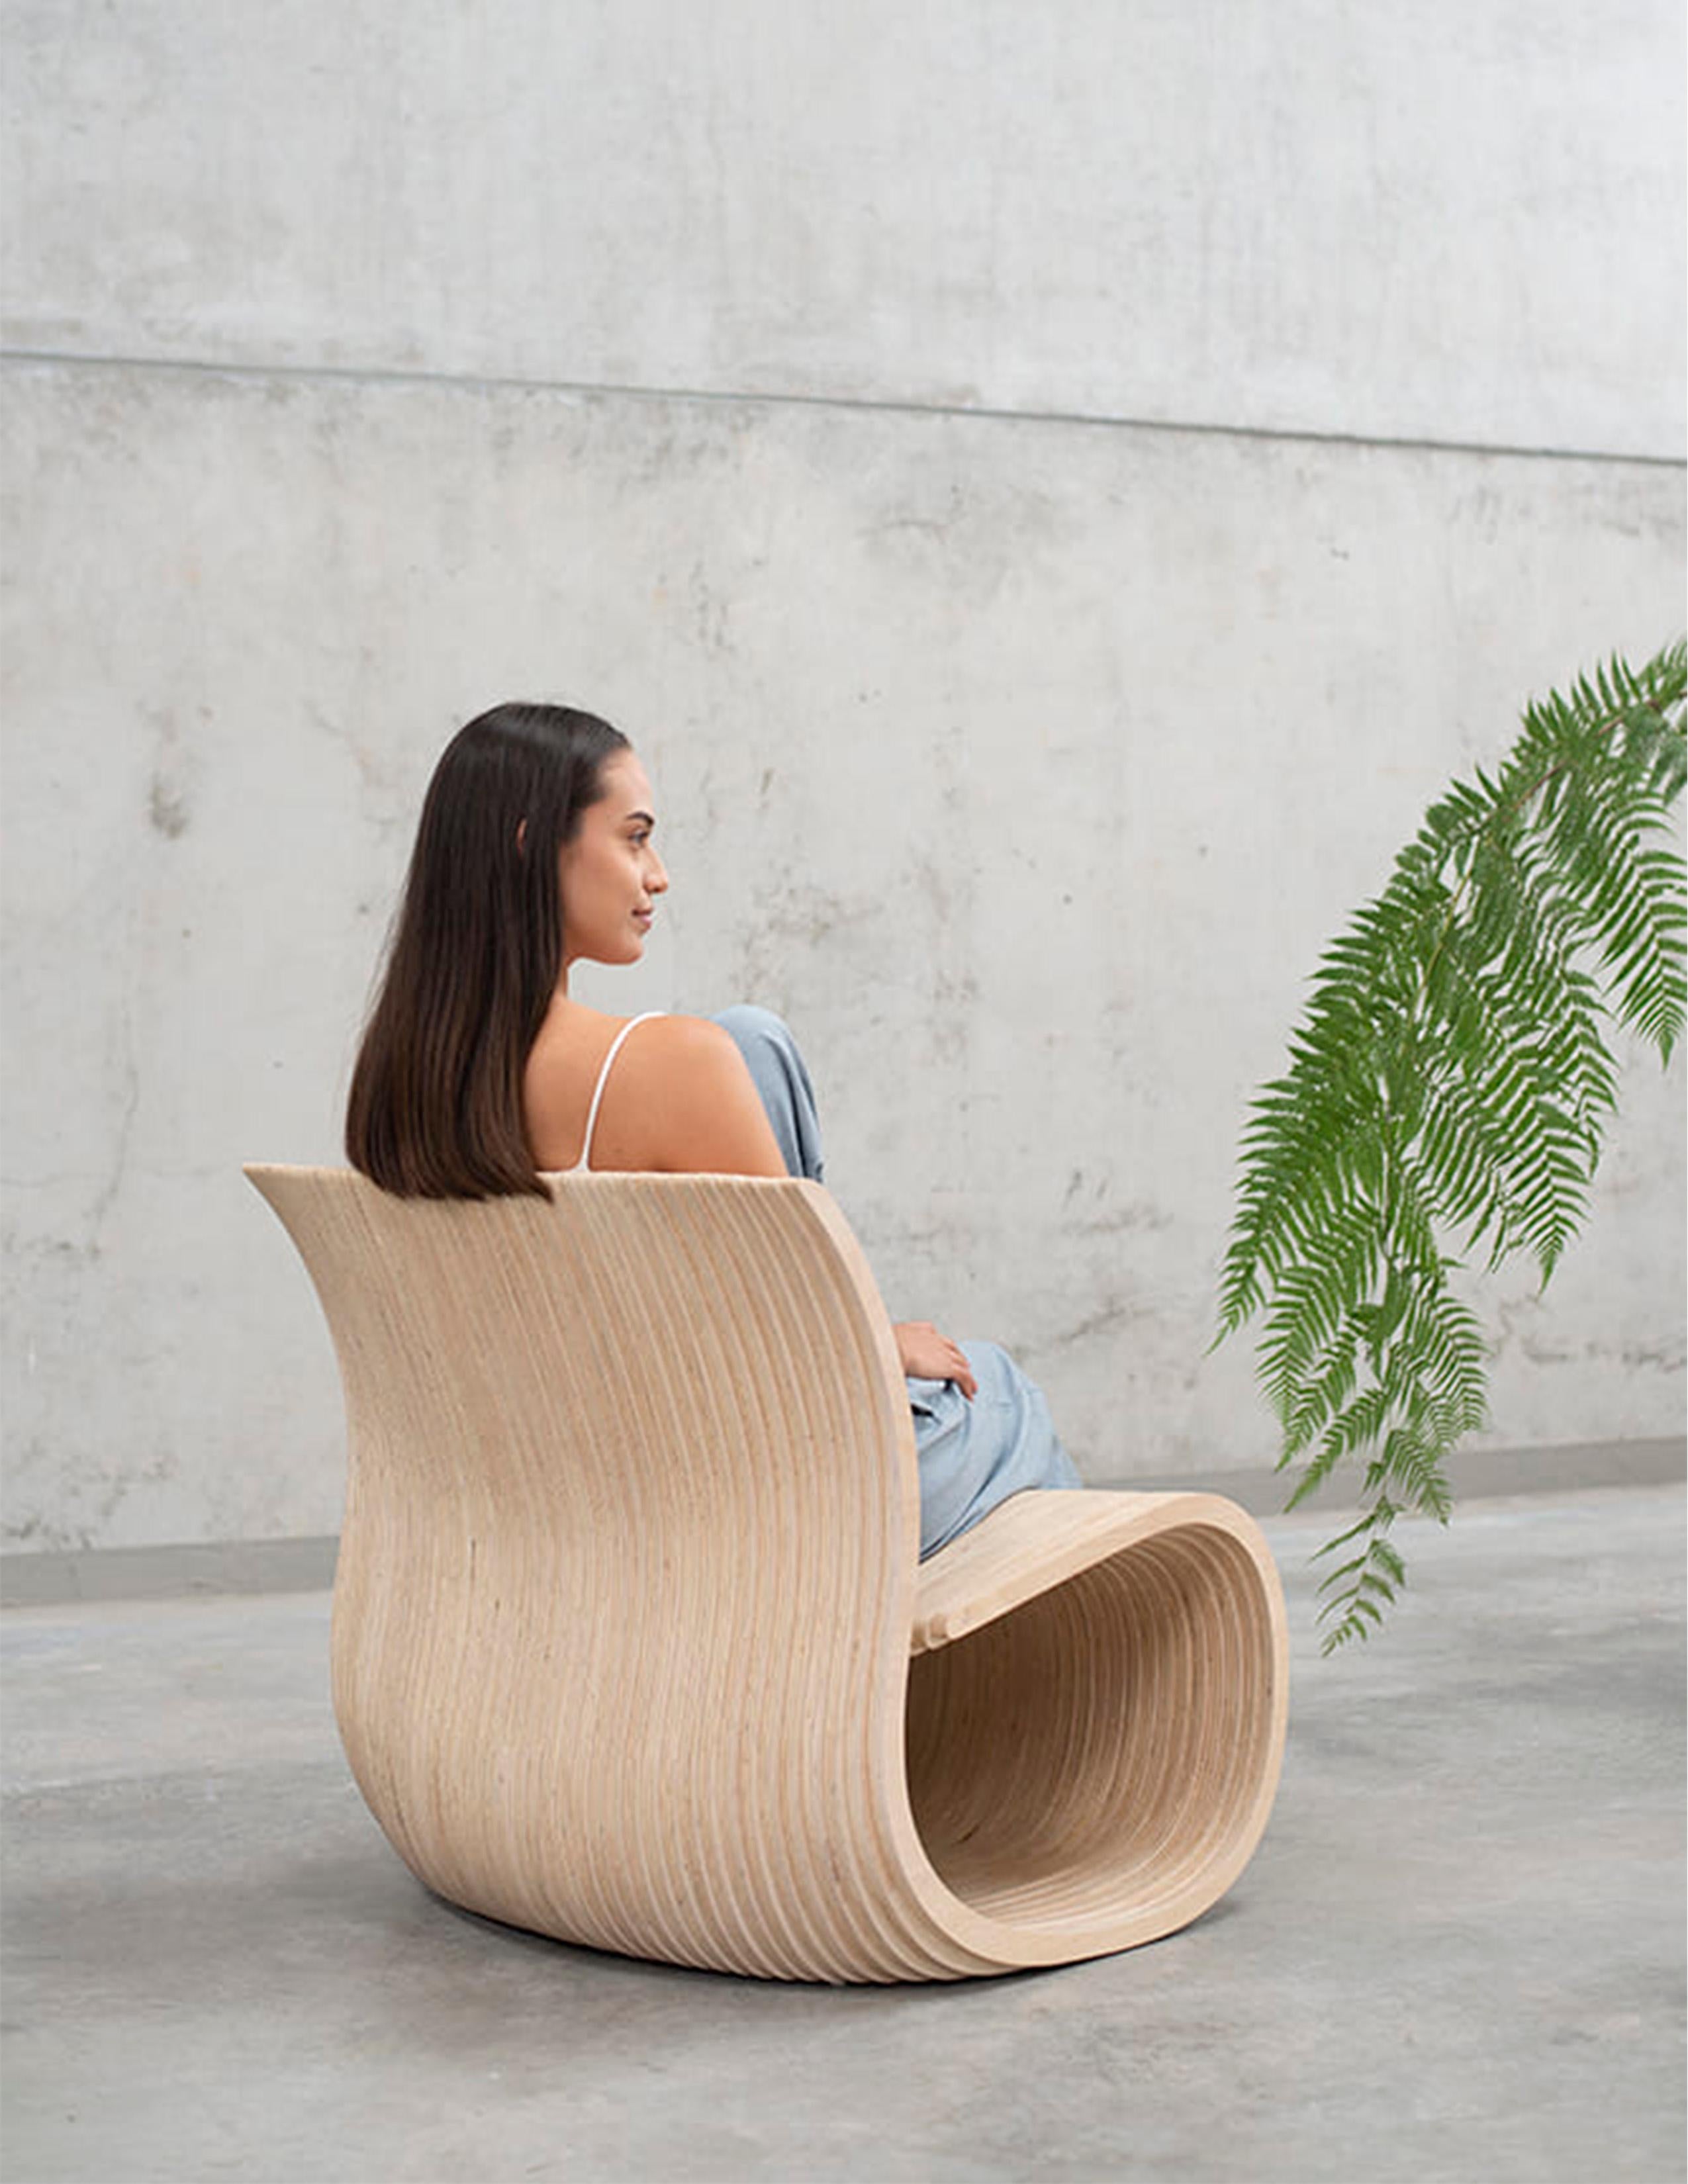 Guatémaltèque Riddle Chair by Piegatto, une chaise contemporaine sculpturale en vente